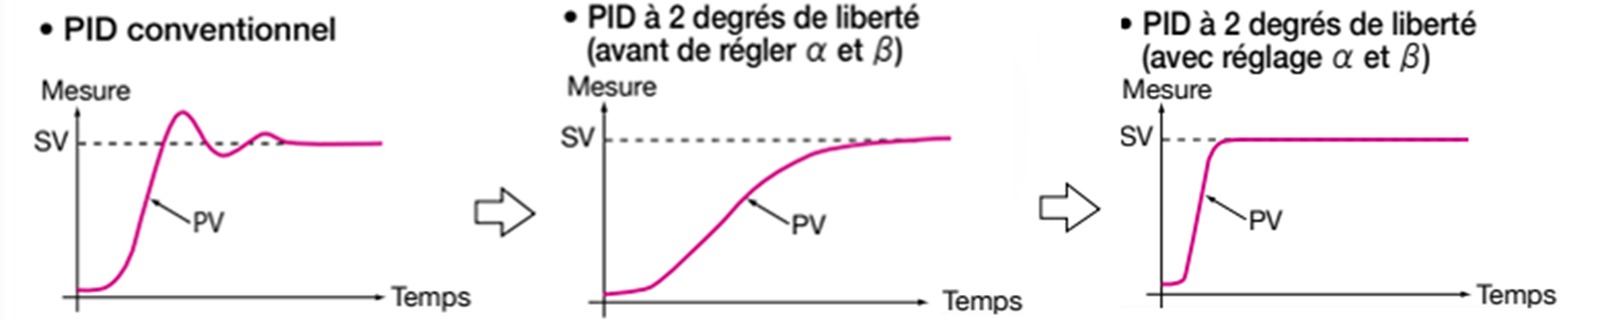 la-regulation-pid-a-2-degres-de-liberte-schema-fr